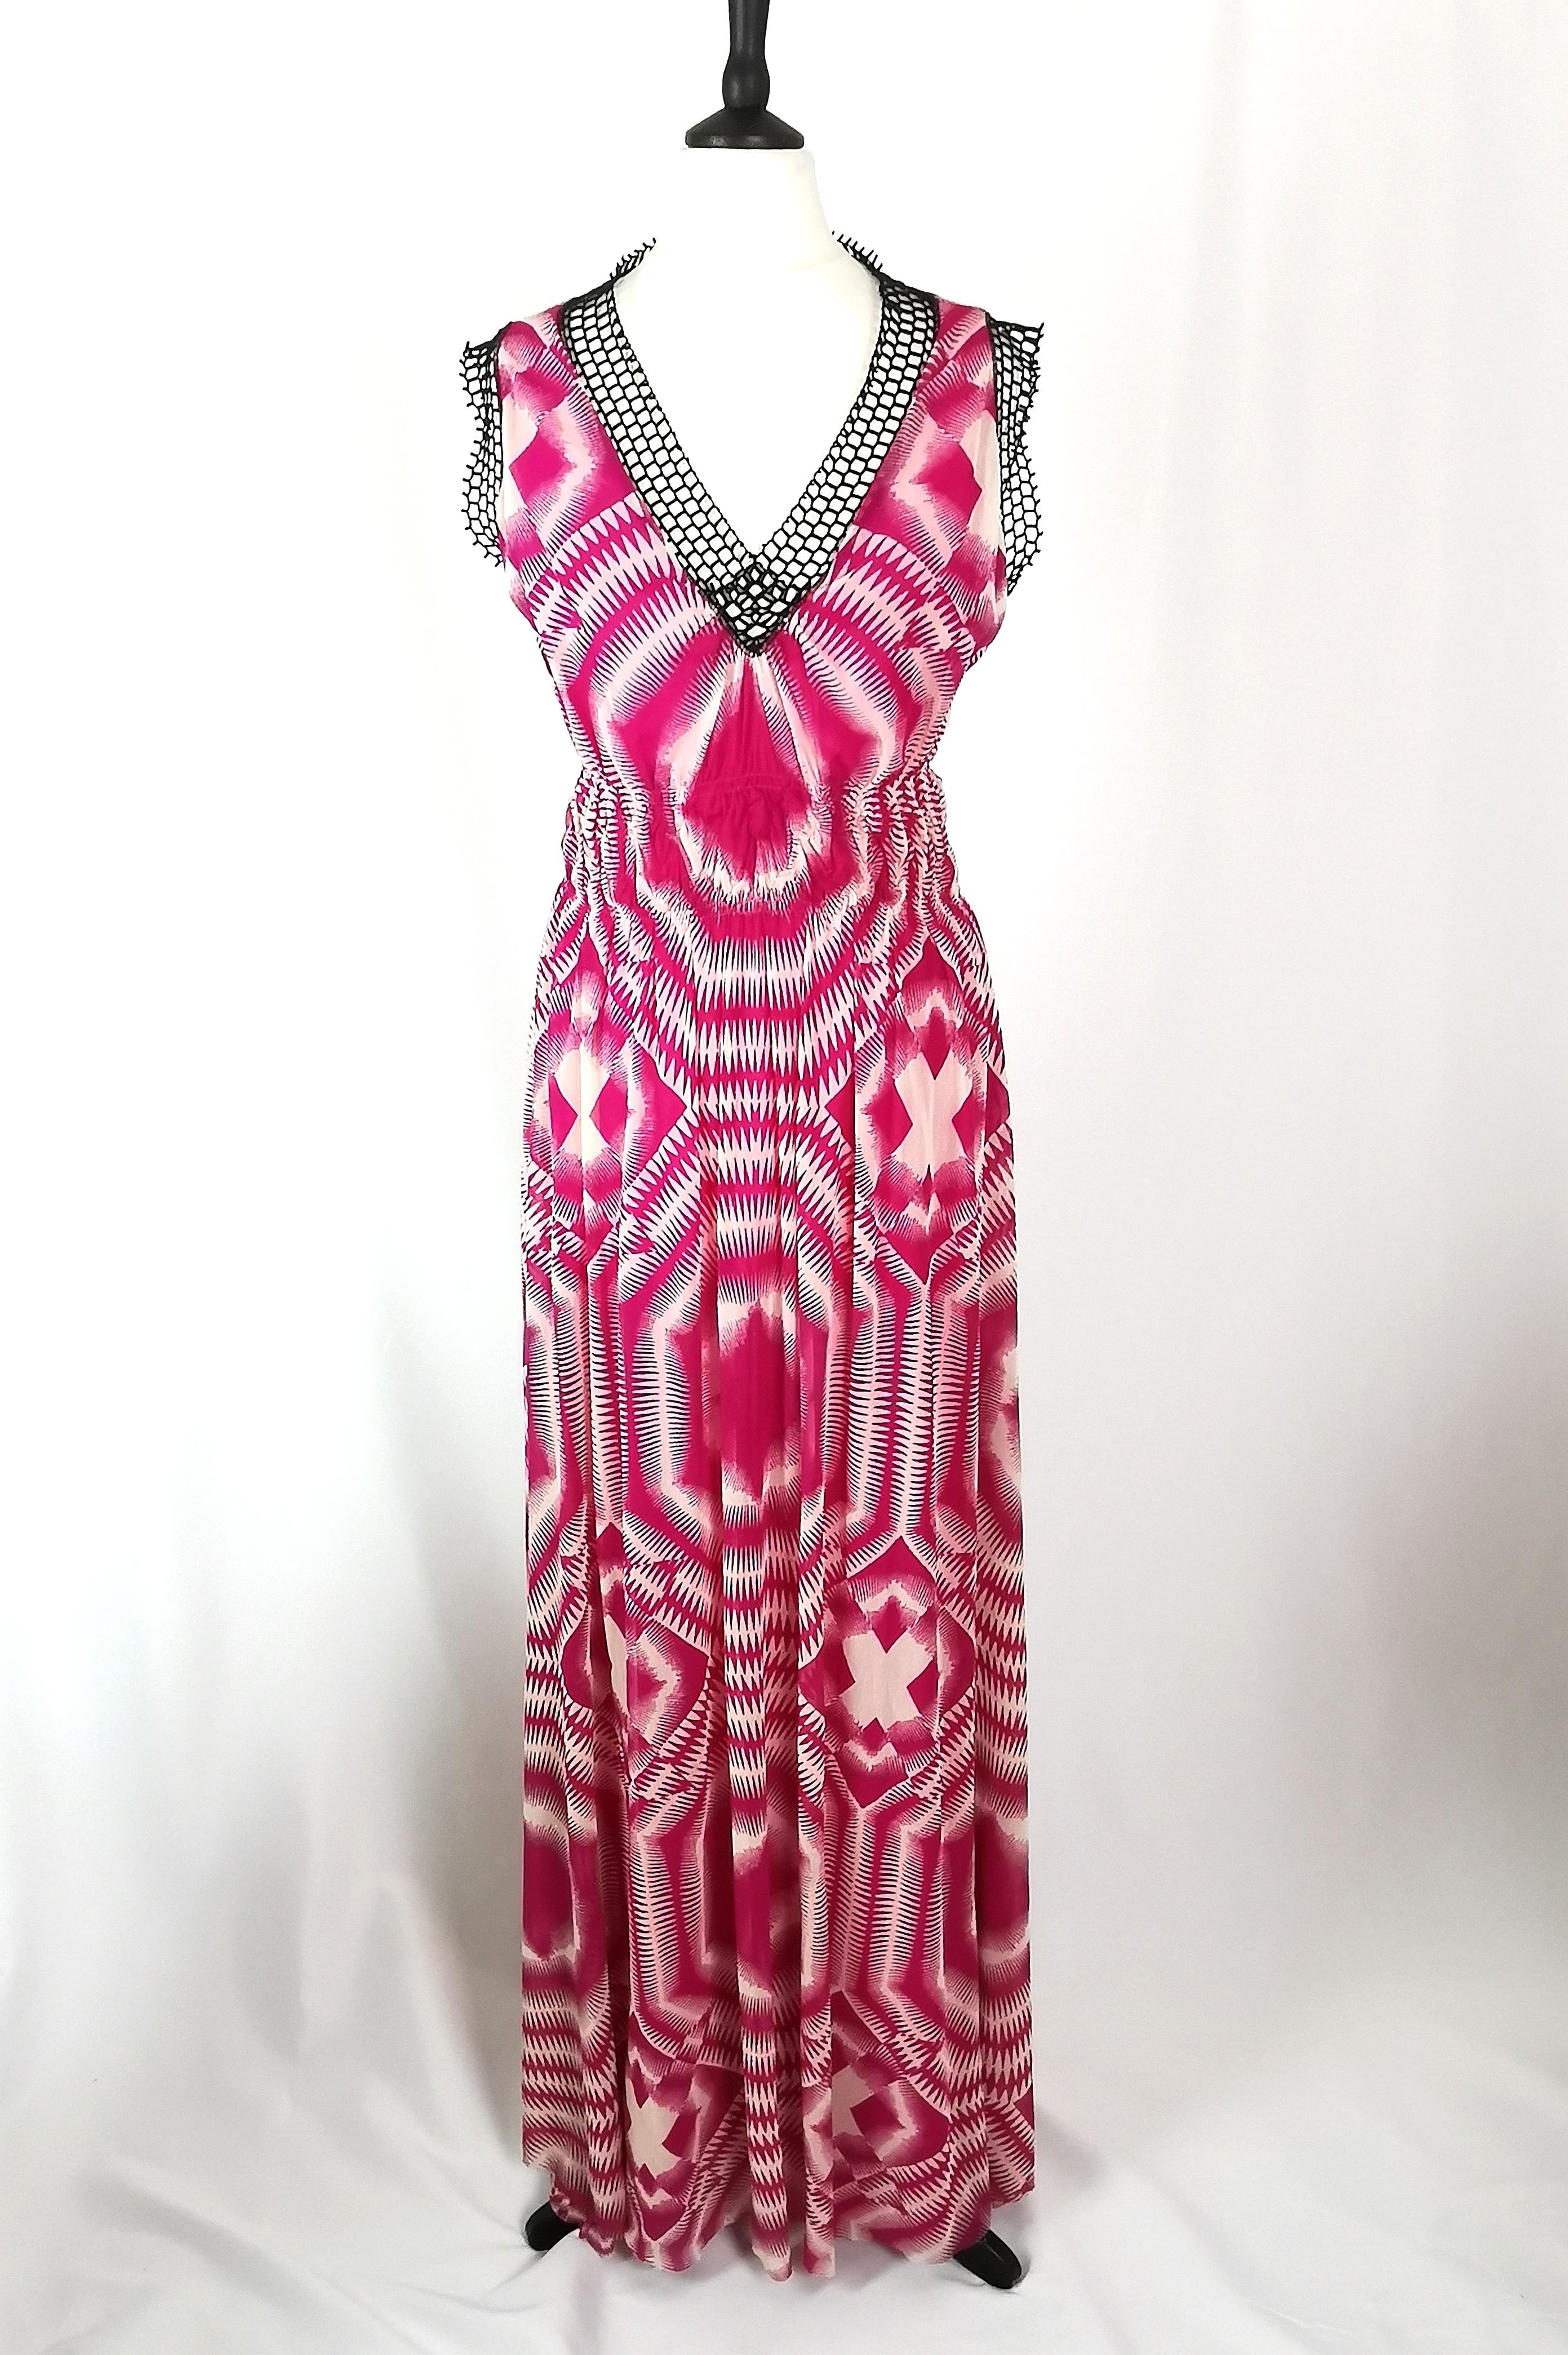 Une robe maxi vintage iconique Jean Paul Gaultier Soleil.

Elle est fabriquée à partir d'une jolie mousseline synthétique légère, entièrement doublée, et présente un imprimé abstrait de style tie dye dans un magenta vibrant, un style très populaire